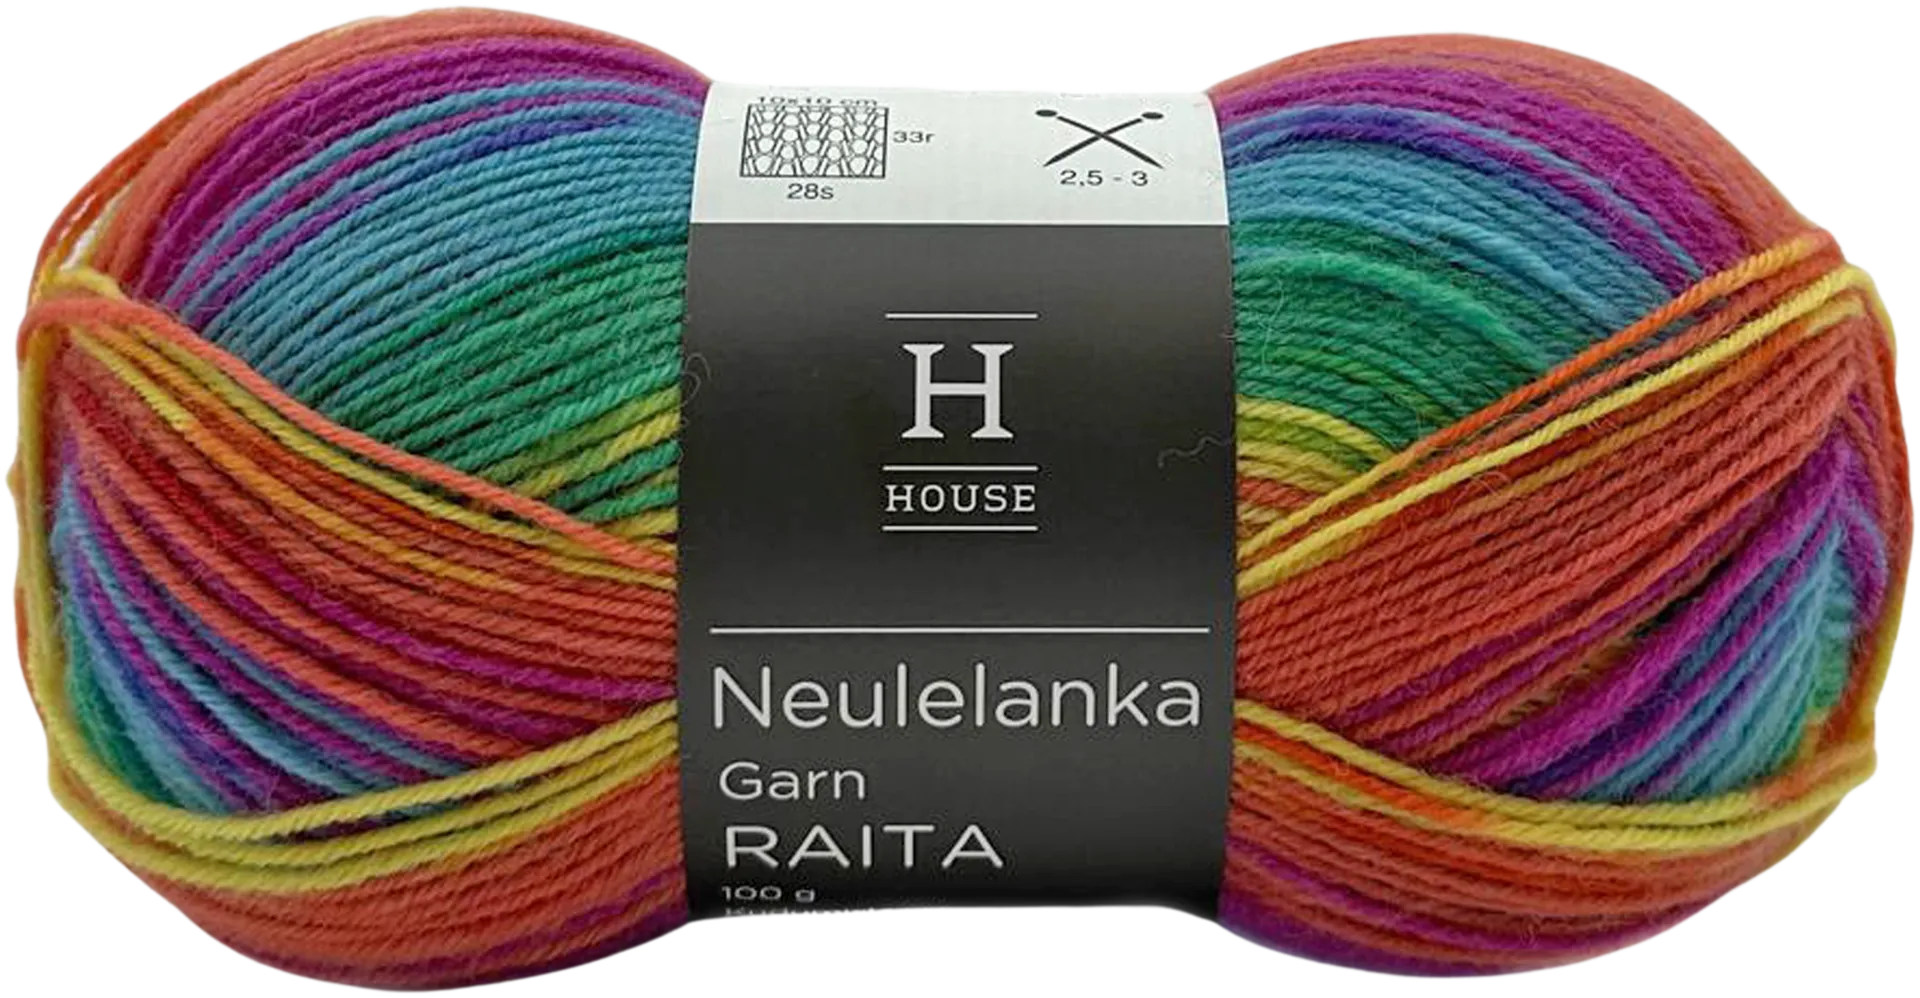 House sukkalanka Raita-kuvio 100 g Rainbow colors 82443